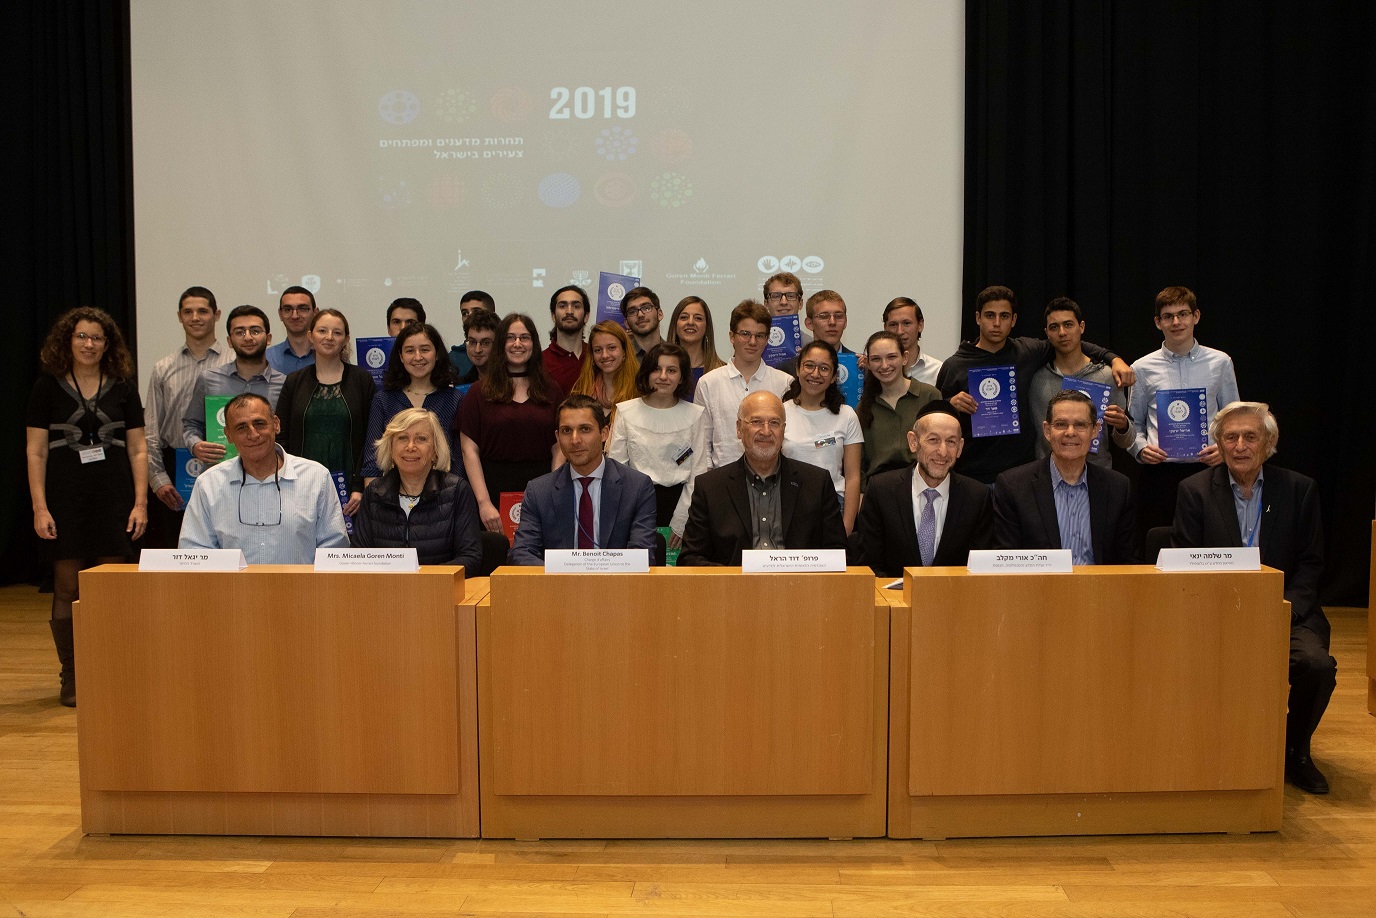 תחרות מדענים ומפתחים צעירים ישראל